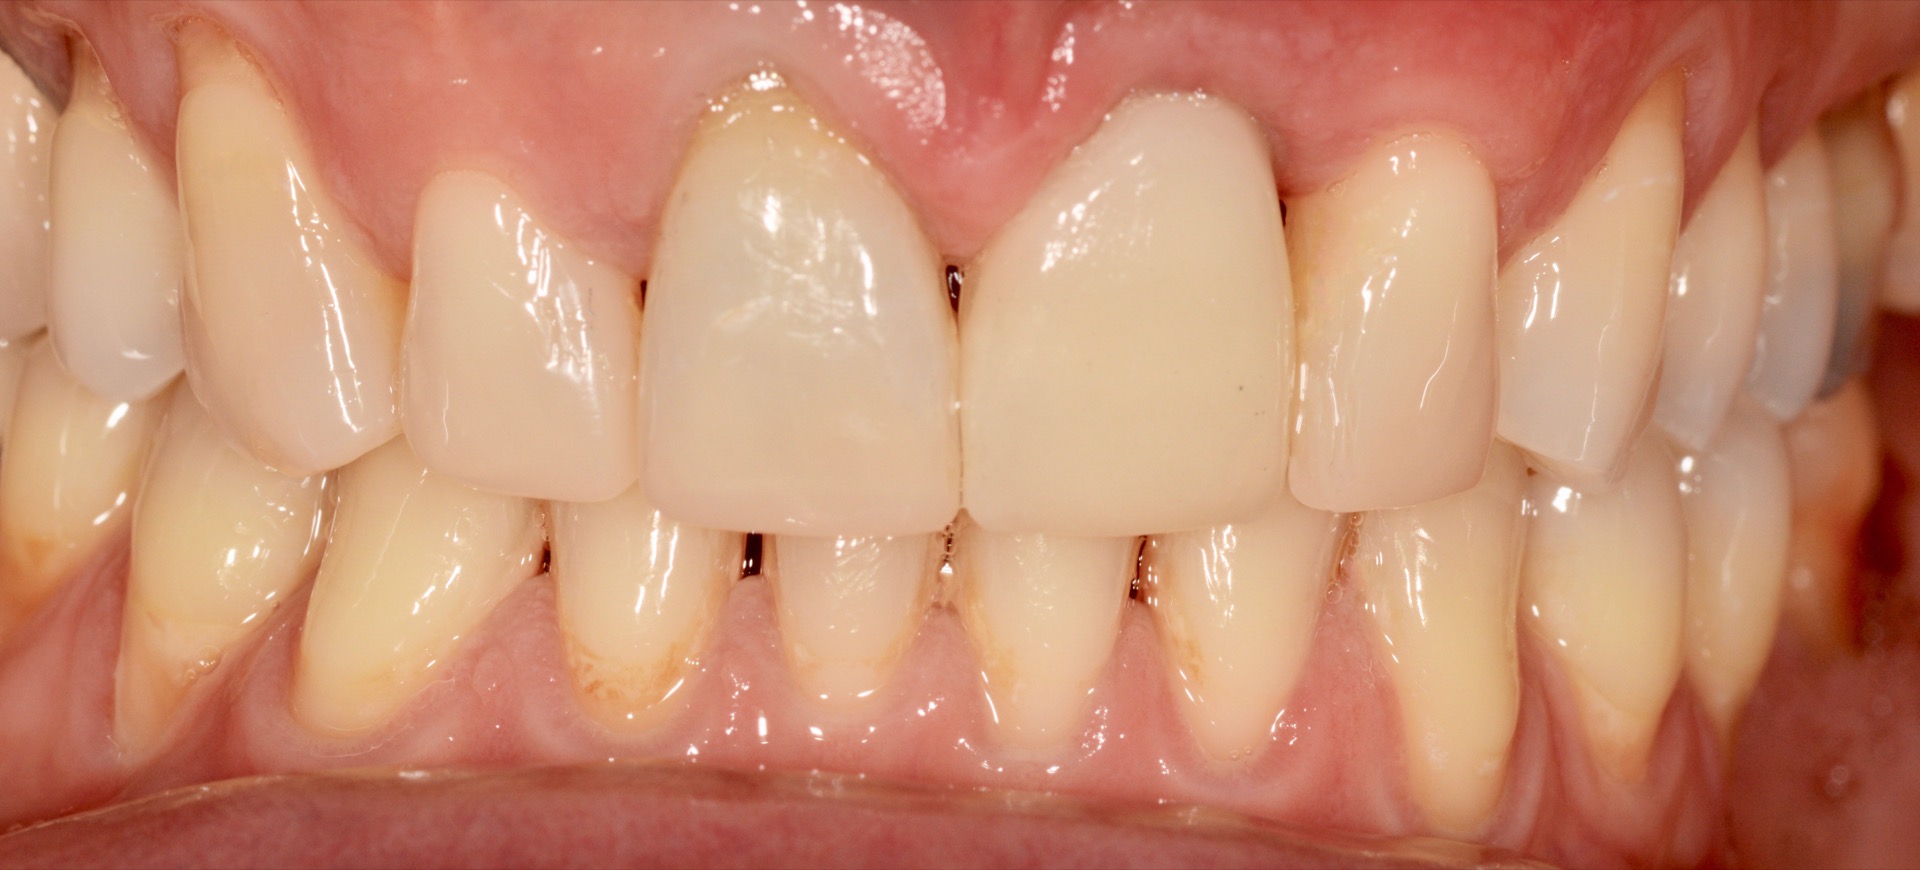 Τελική κατάσταση - Πρόσθια άποψη - Η τελική στεφάνη διπυριτικού λιθίου τοποθετημένη στο στόμα.